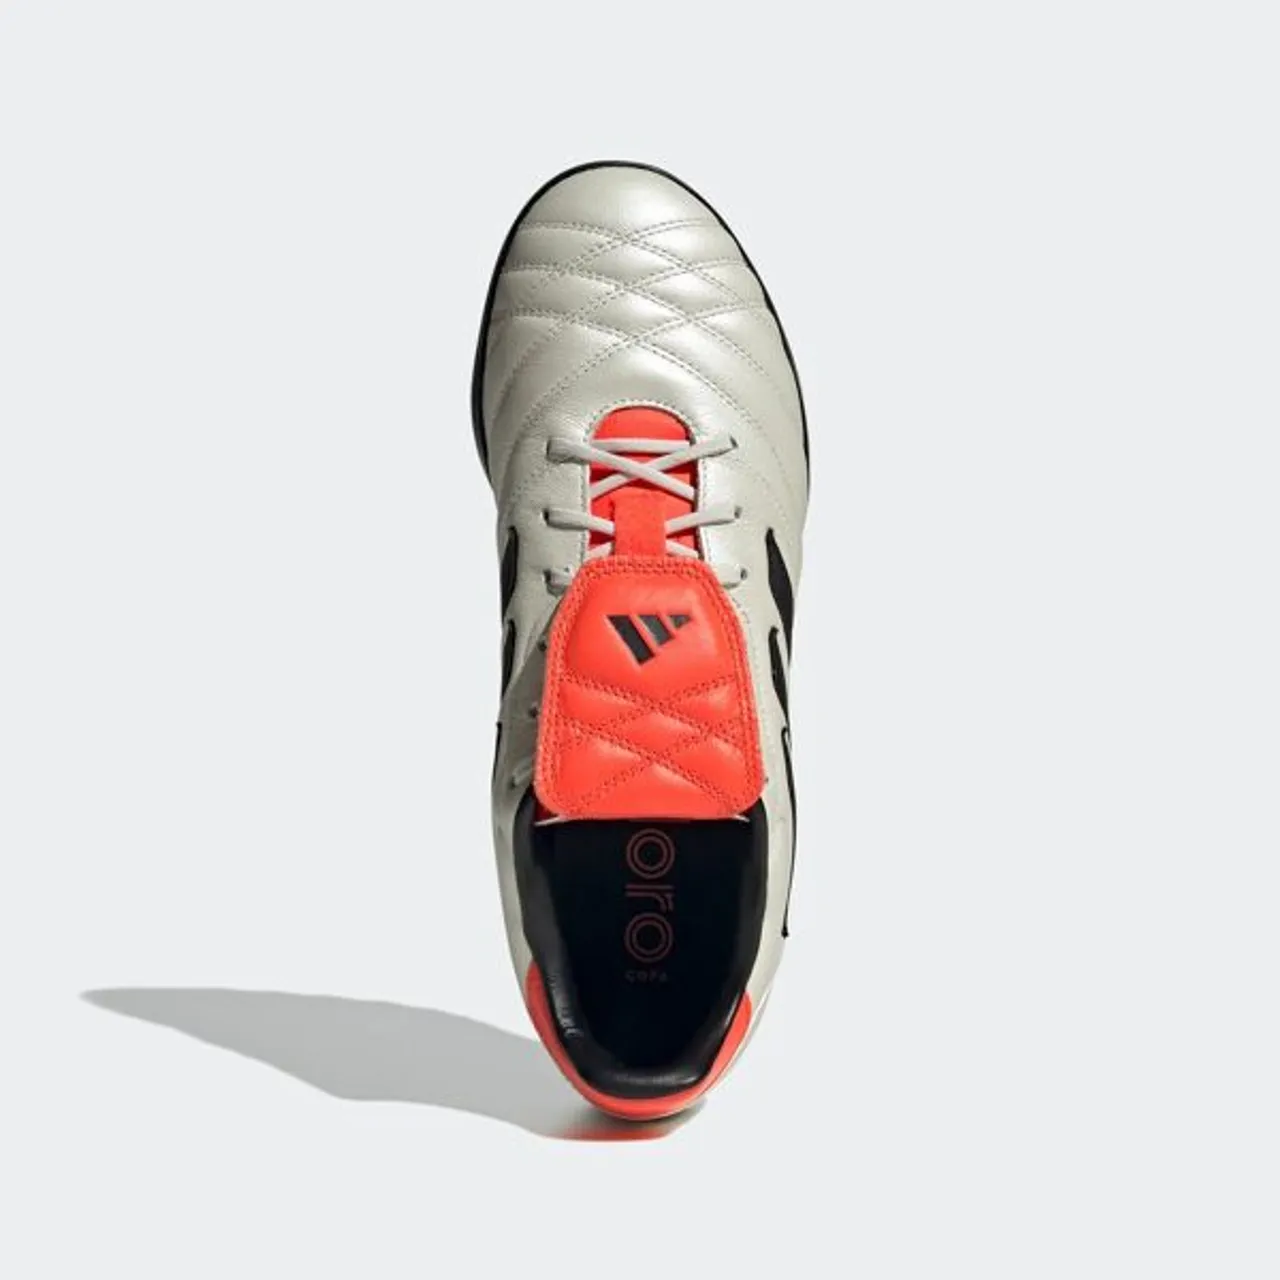 Fußballschuh ADIDAS PERFORMANCE "COPA GLORO TF" Gr. 39, schwarz-weiß (off white, core black, solar red) Schuhe Fußballschuhe